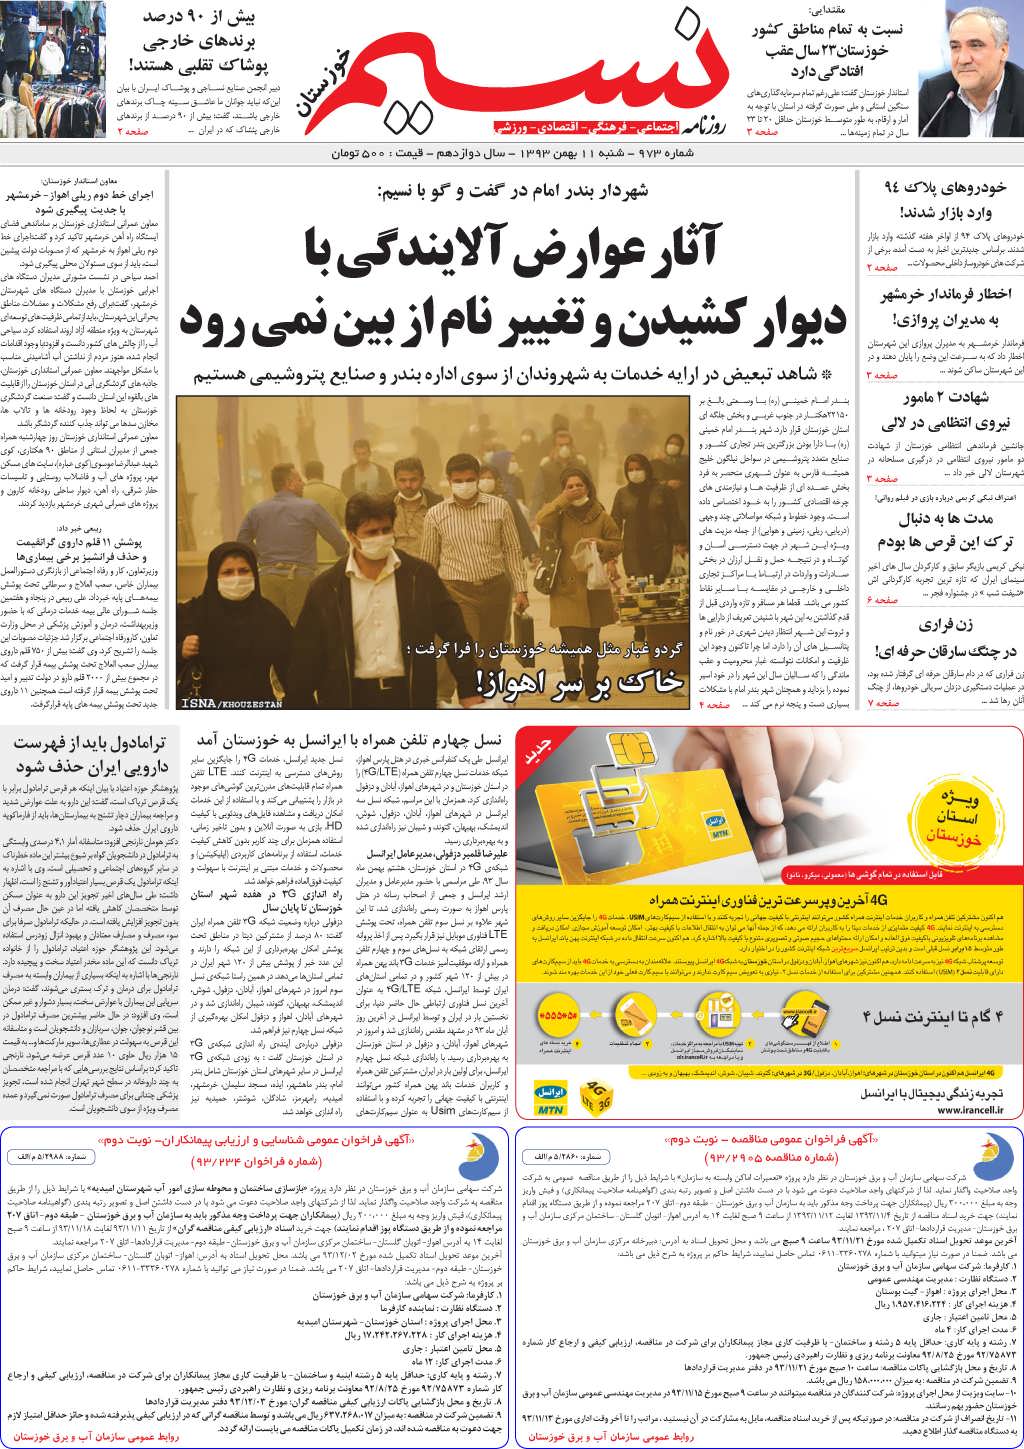 صفحه اصلی روزنامه نسیم شماره 973